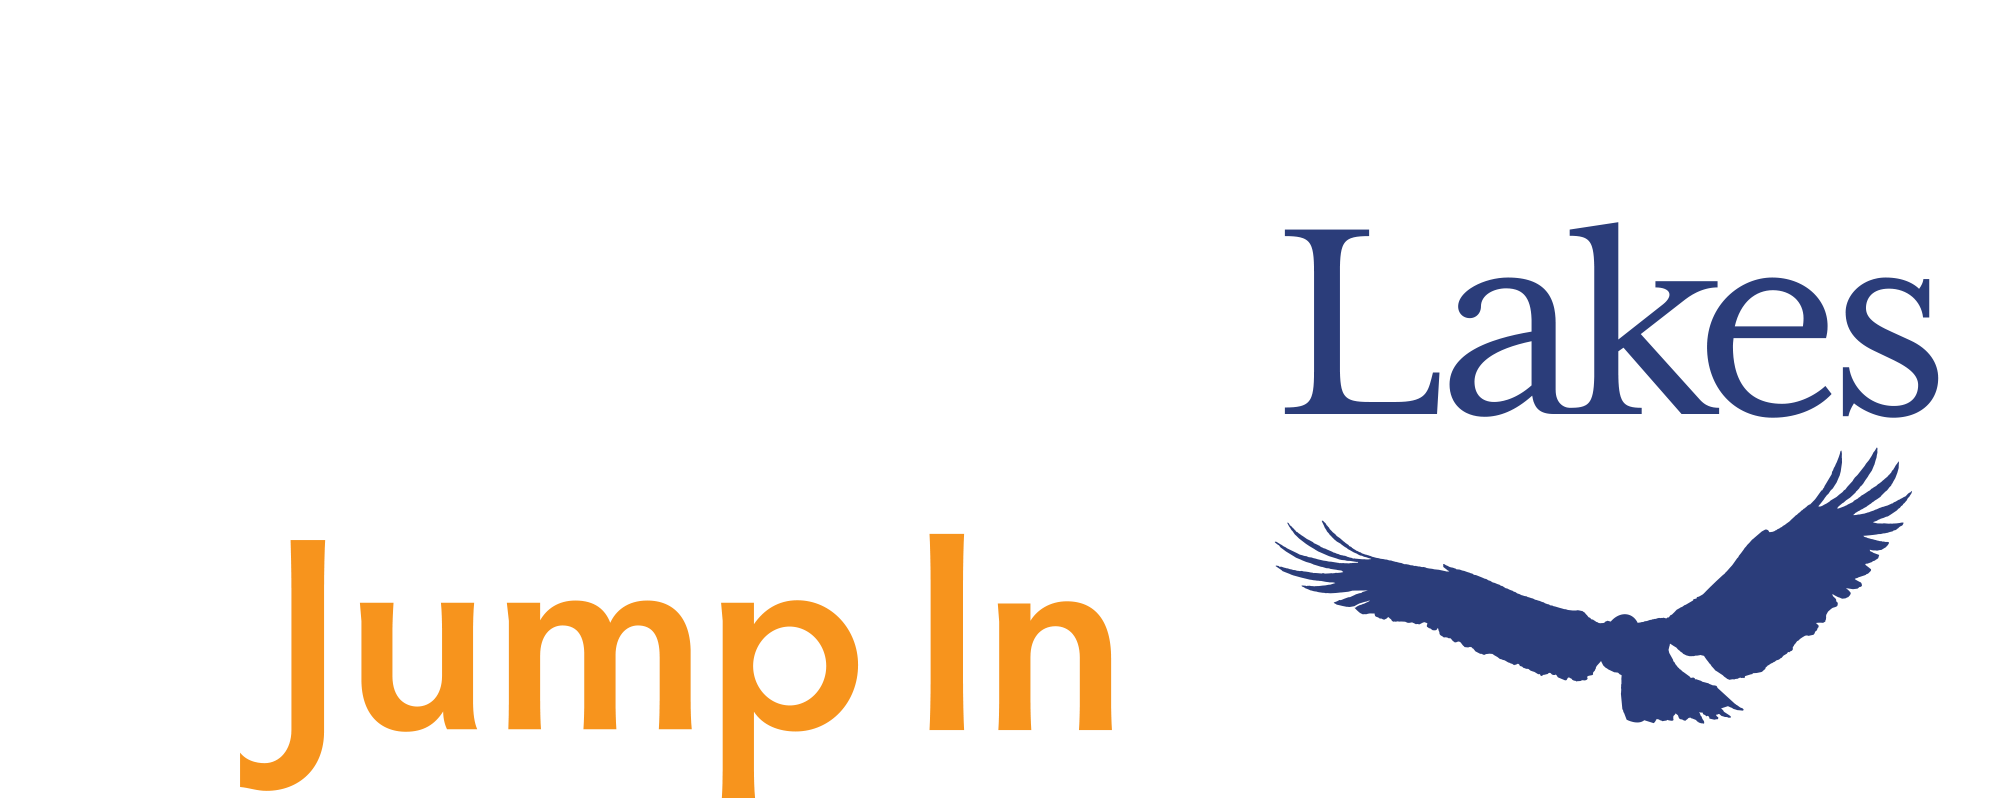 Kawartha Jump In logo reverse